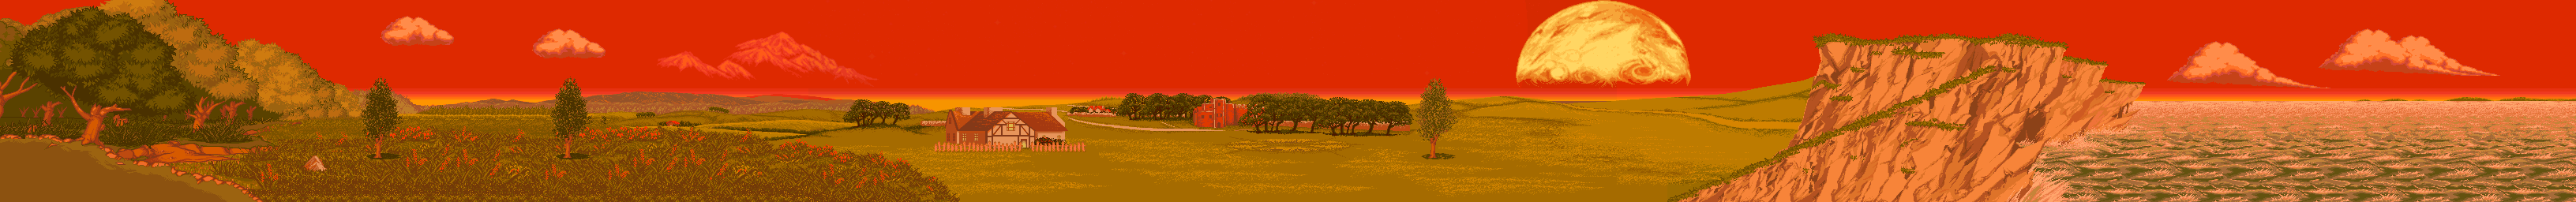 Pistachio Villa (Sunset)